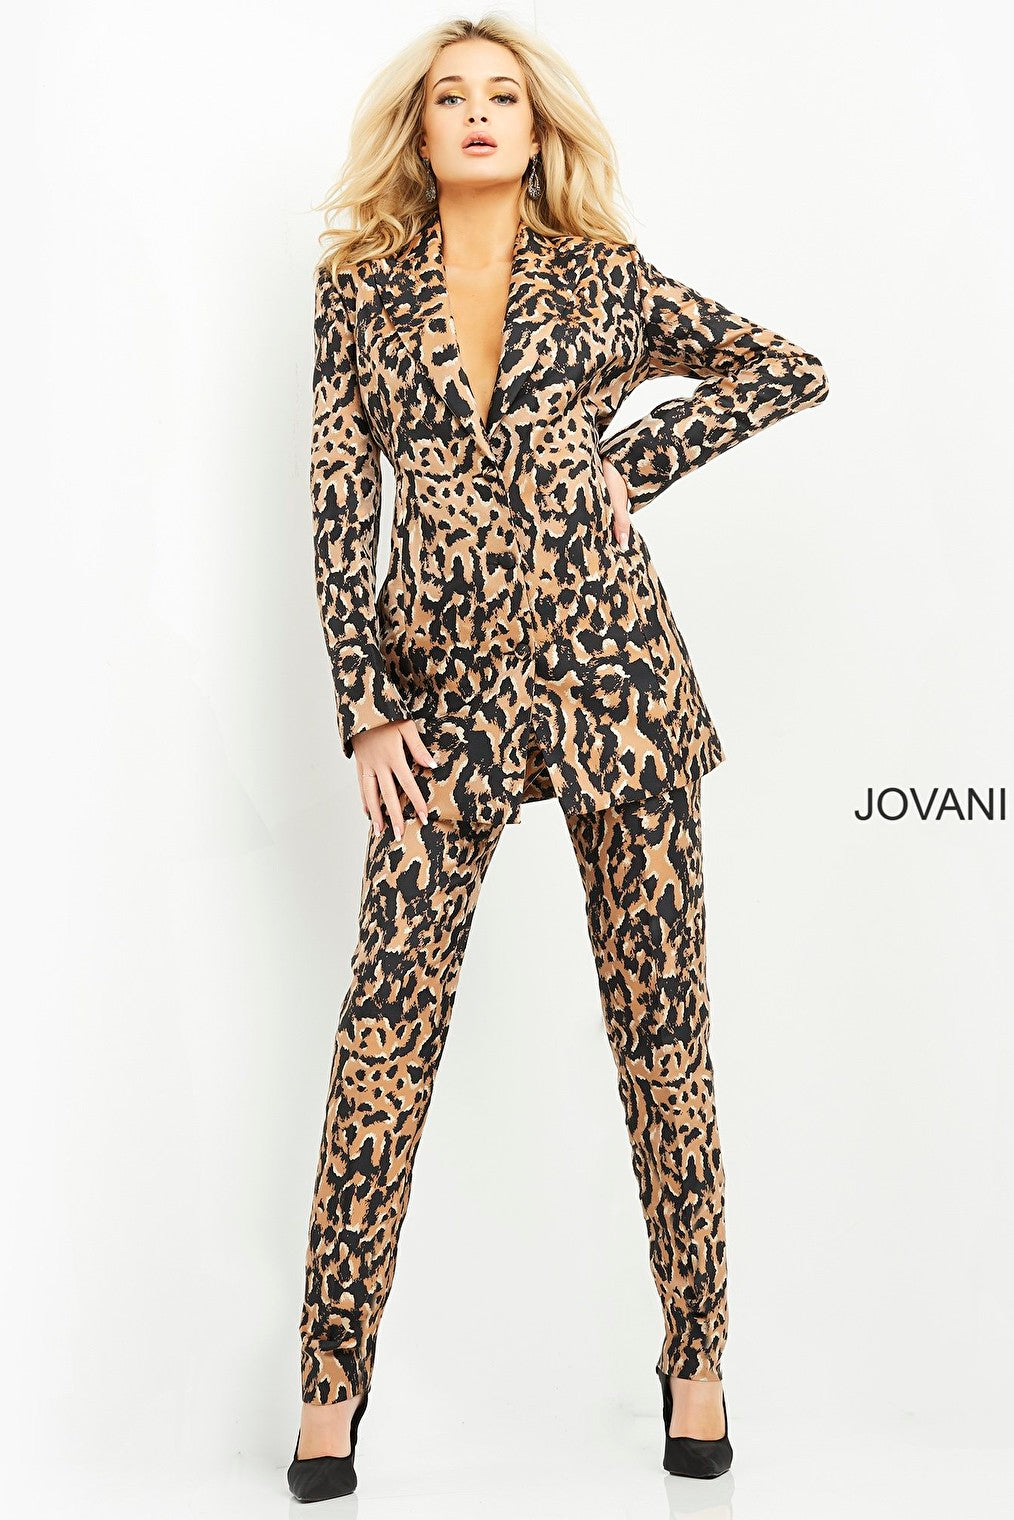 Jovani 03840 form fitting pant suit 